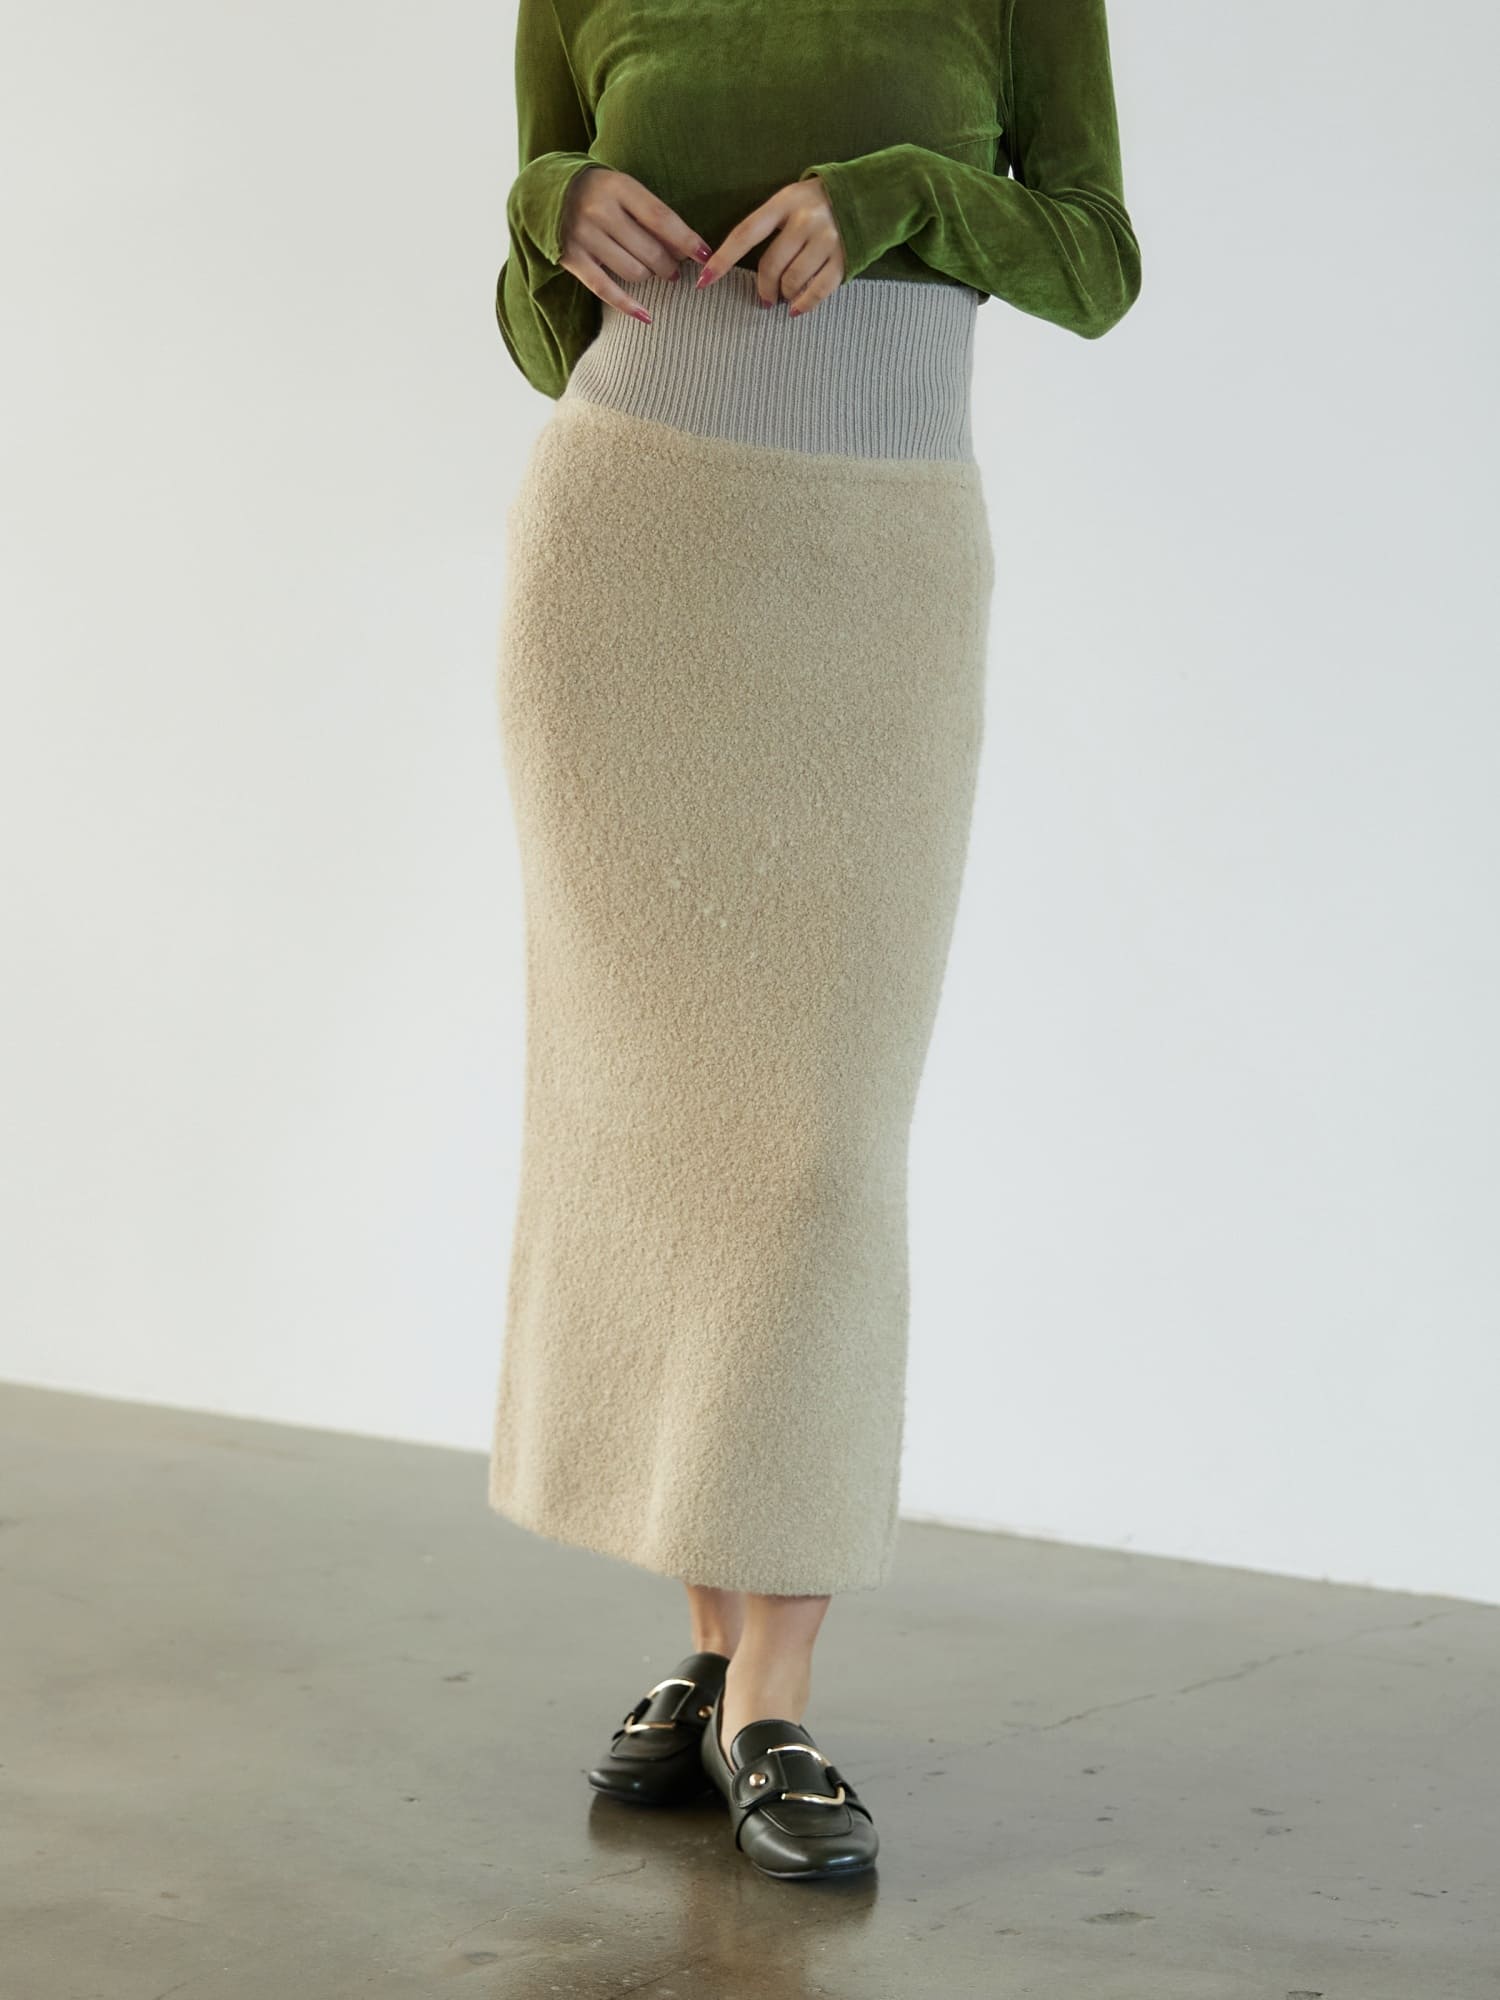 ブークレニットタイトスカート | 小柄・低身長女性向けファッション ...